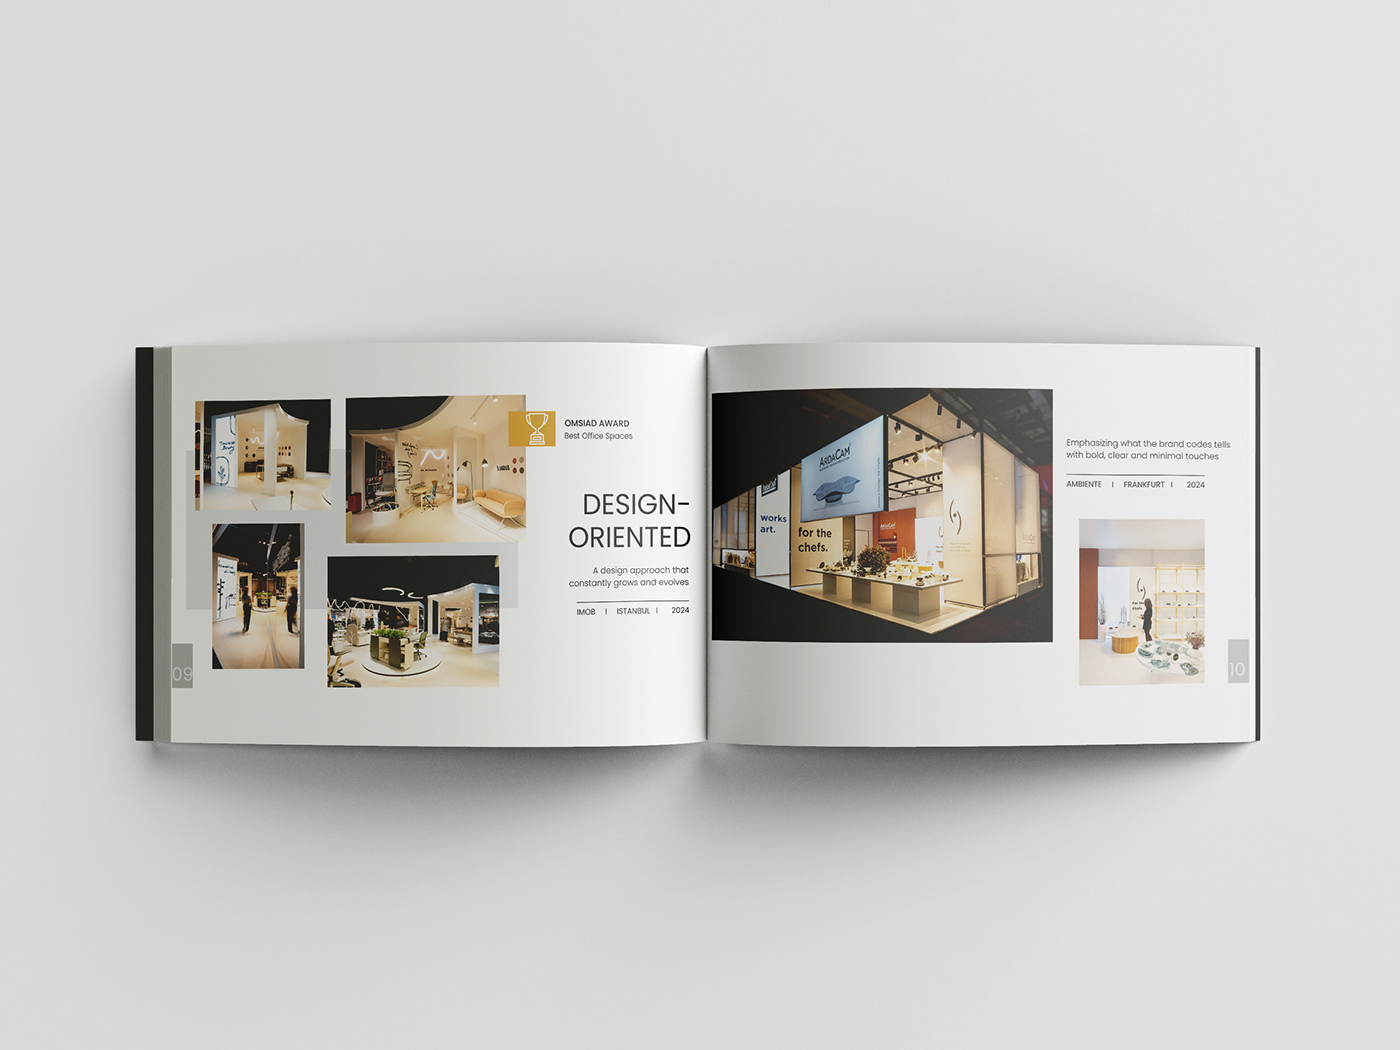 design mockups book portfolio architecture interior design  Exhibition  Exhibition Design  booth booth design